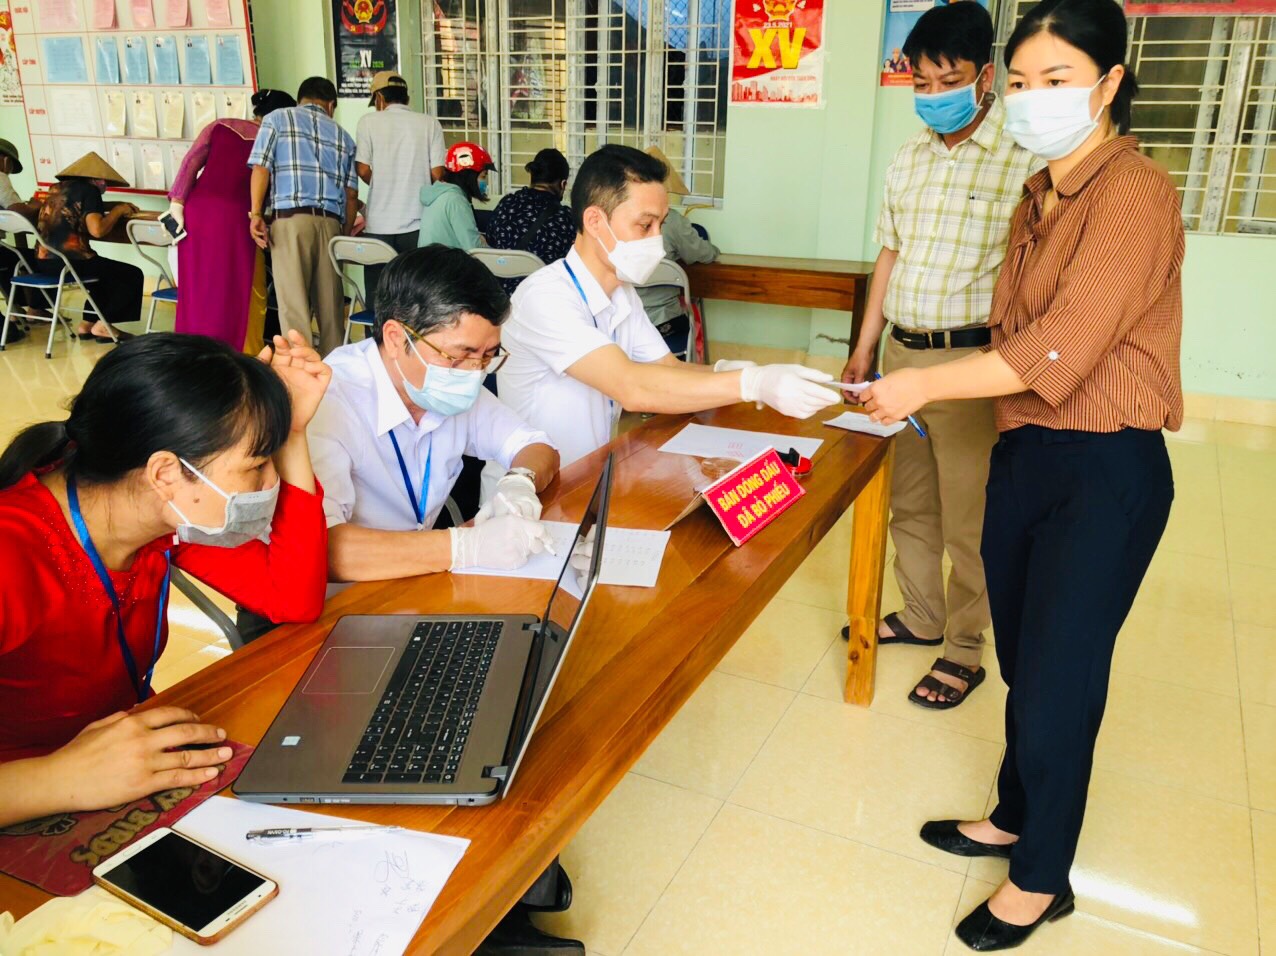 Quảng Ninh chuyển cả hòm phiếu lưu động tới giường bệnh cho bệnh nhân bỏ phiếu - Ảnh 11.